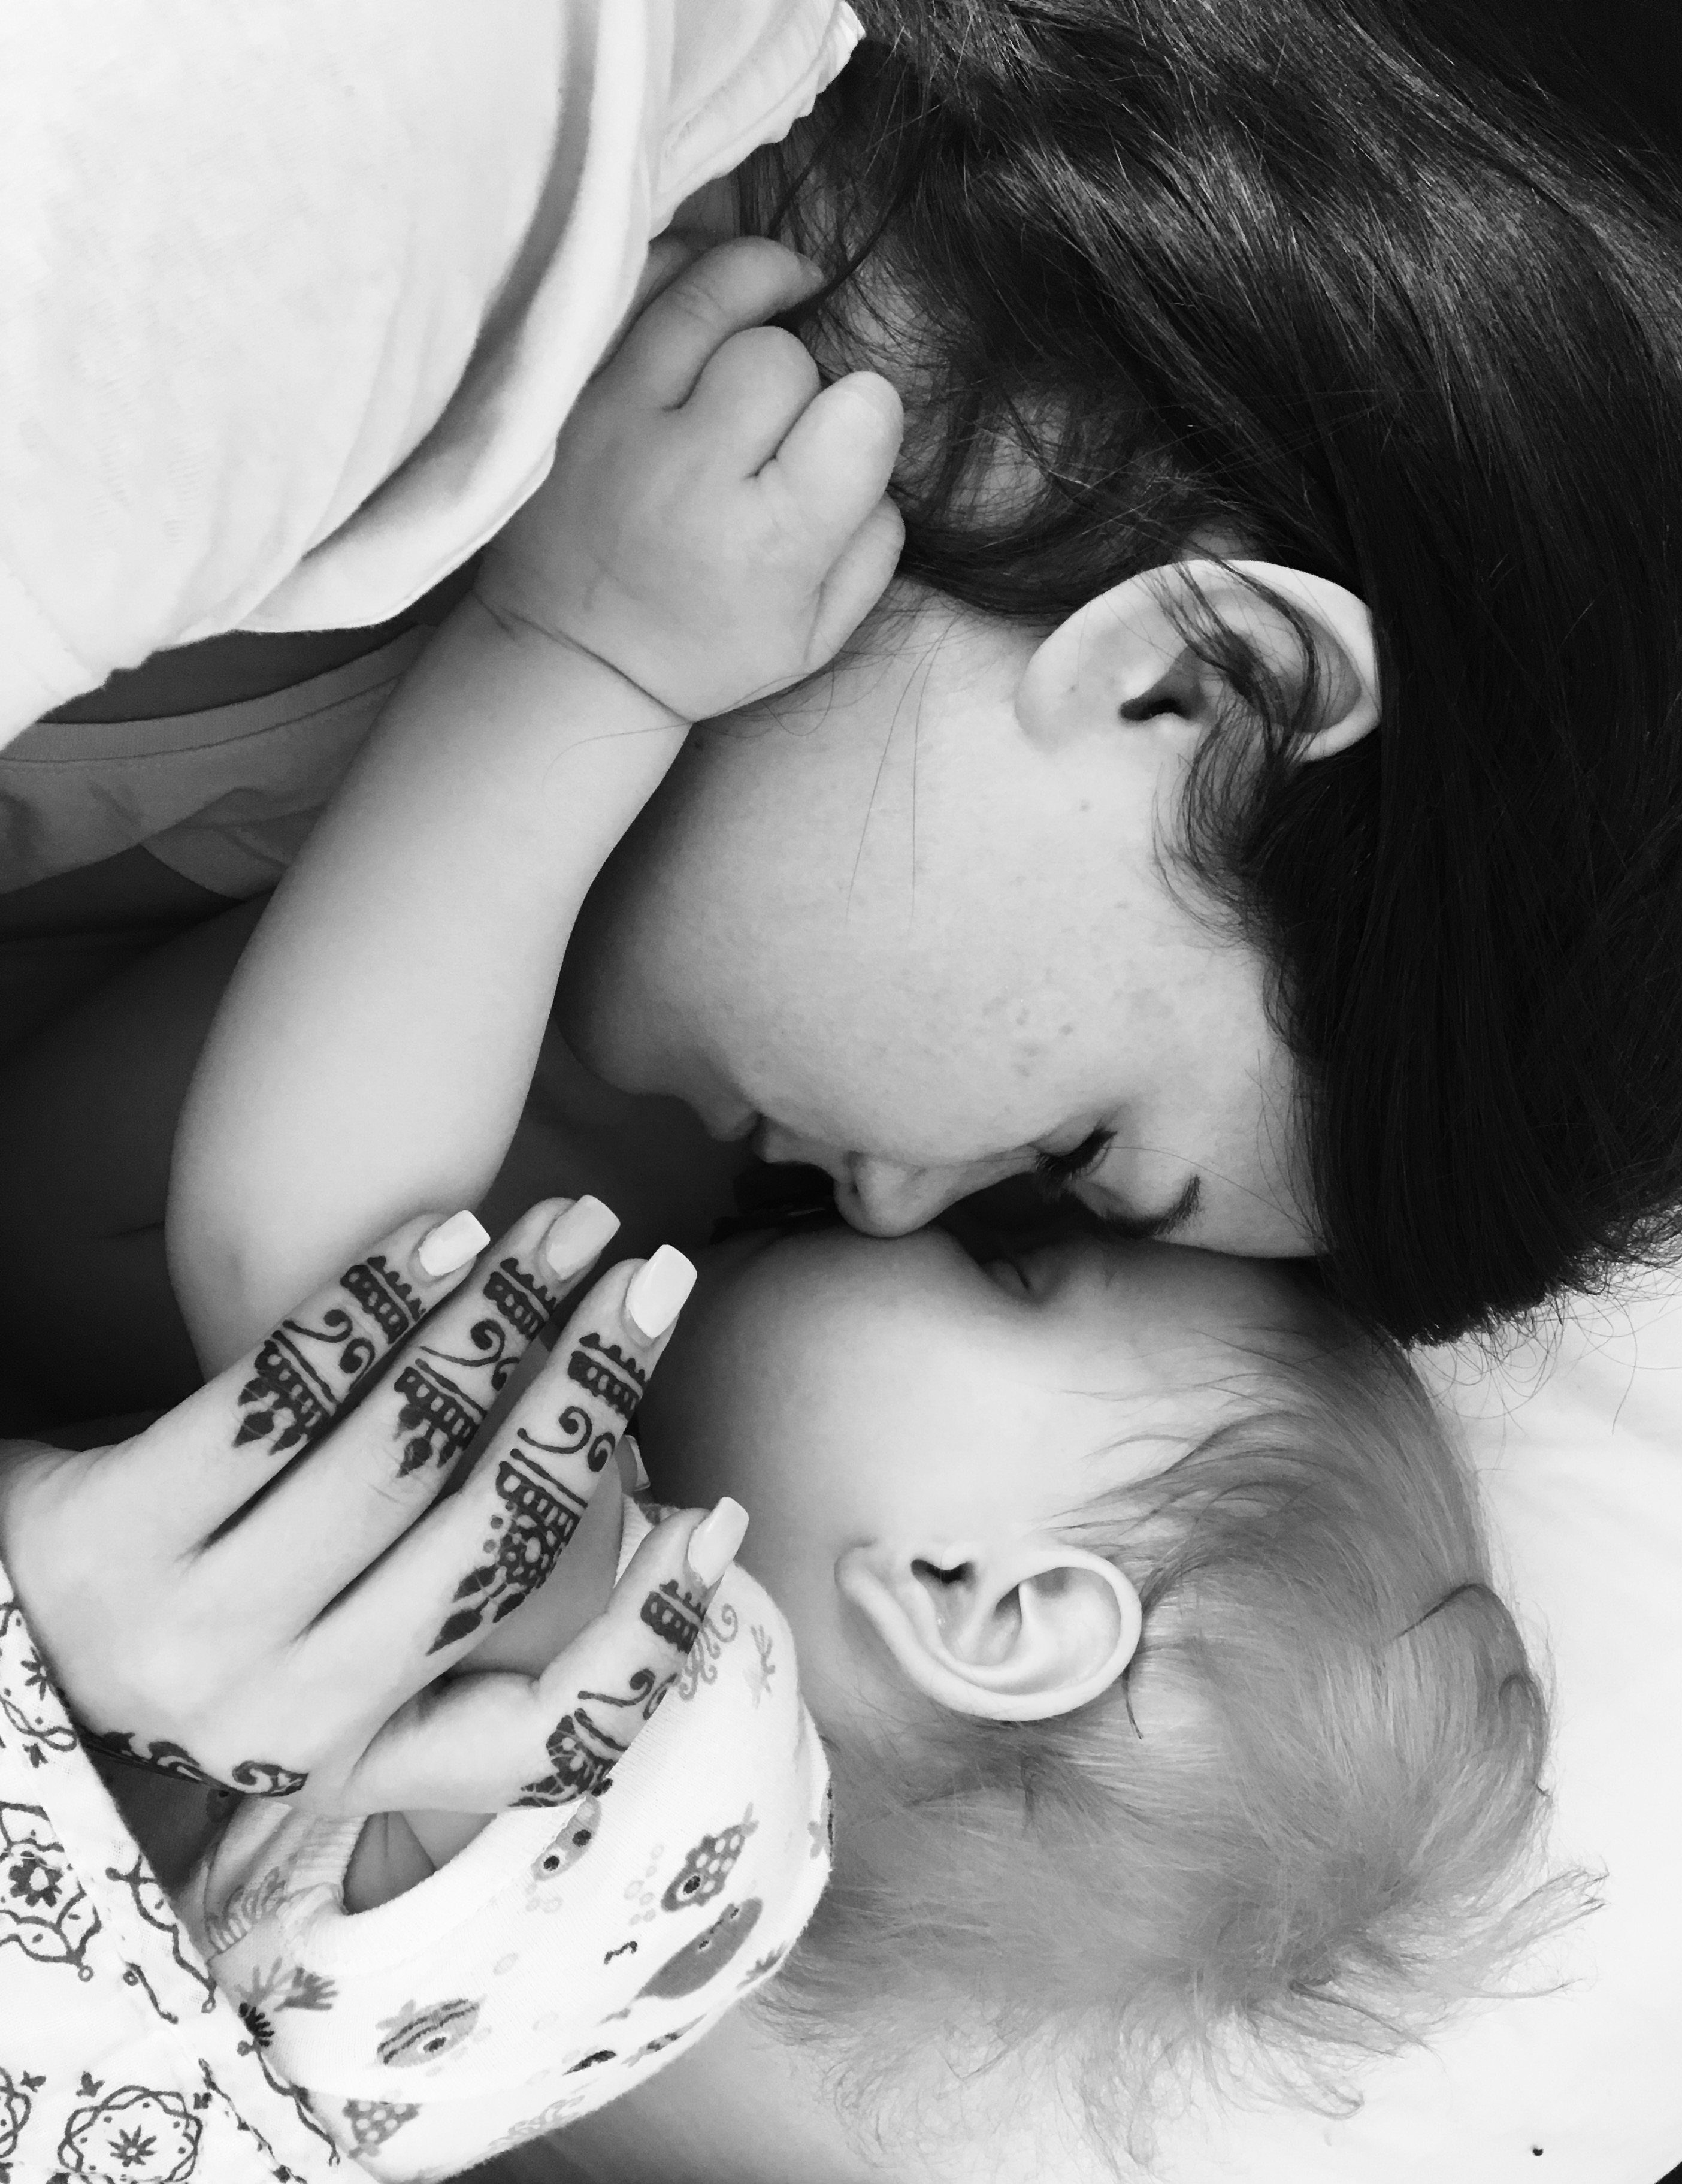 apaság anyaság gyereknevelés család felelősség szeretet